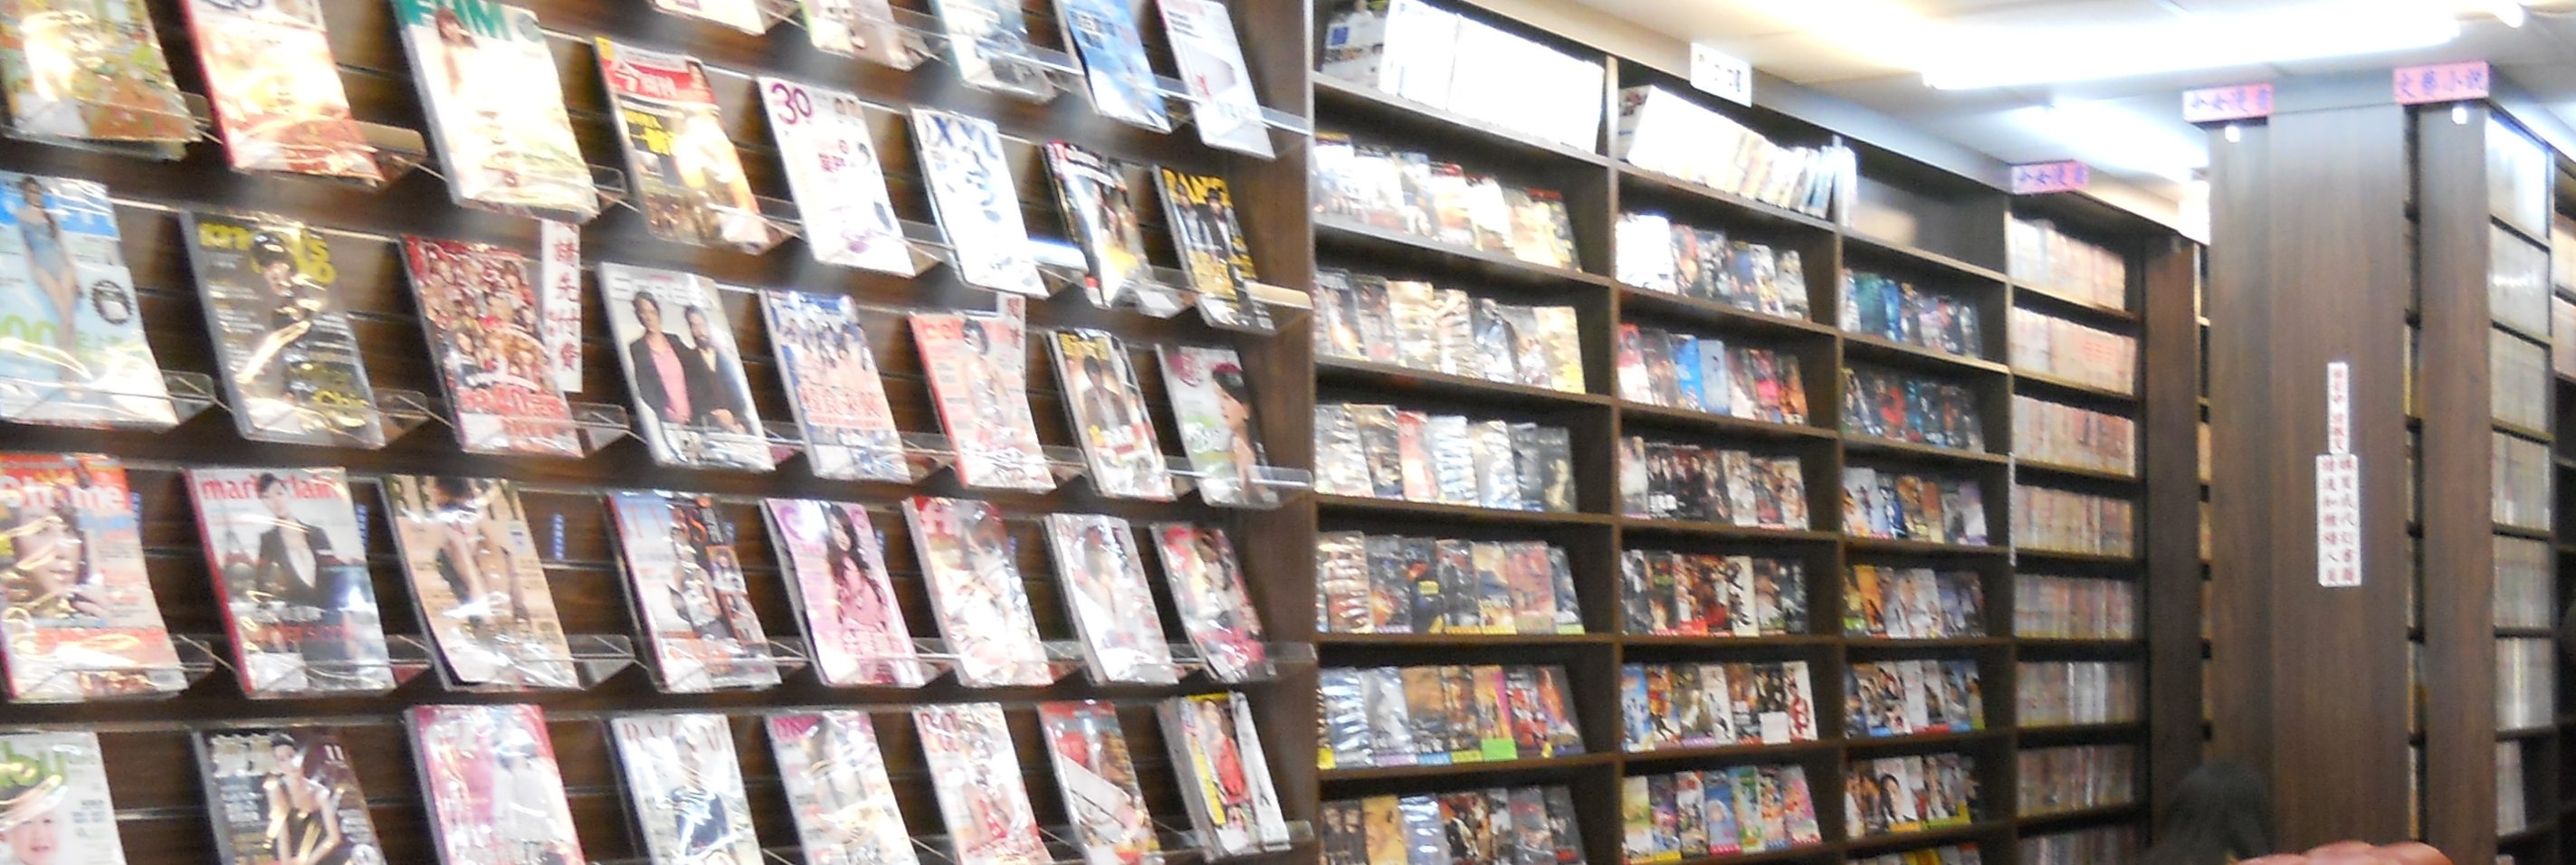 【頂讓漫畫小說店】 小說漫畫DVD店頂讓 - 20141210164508-201316000.JPG(圖)